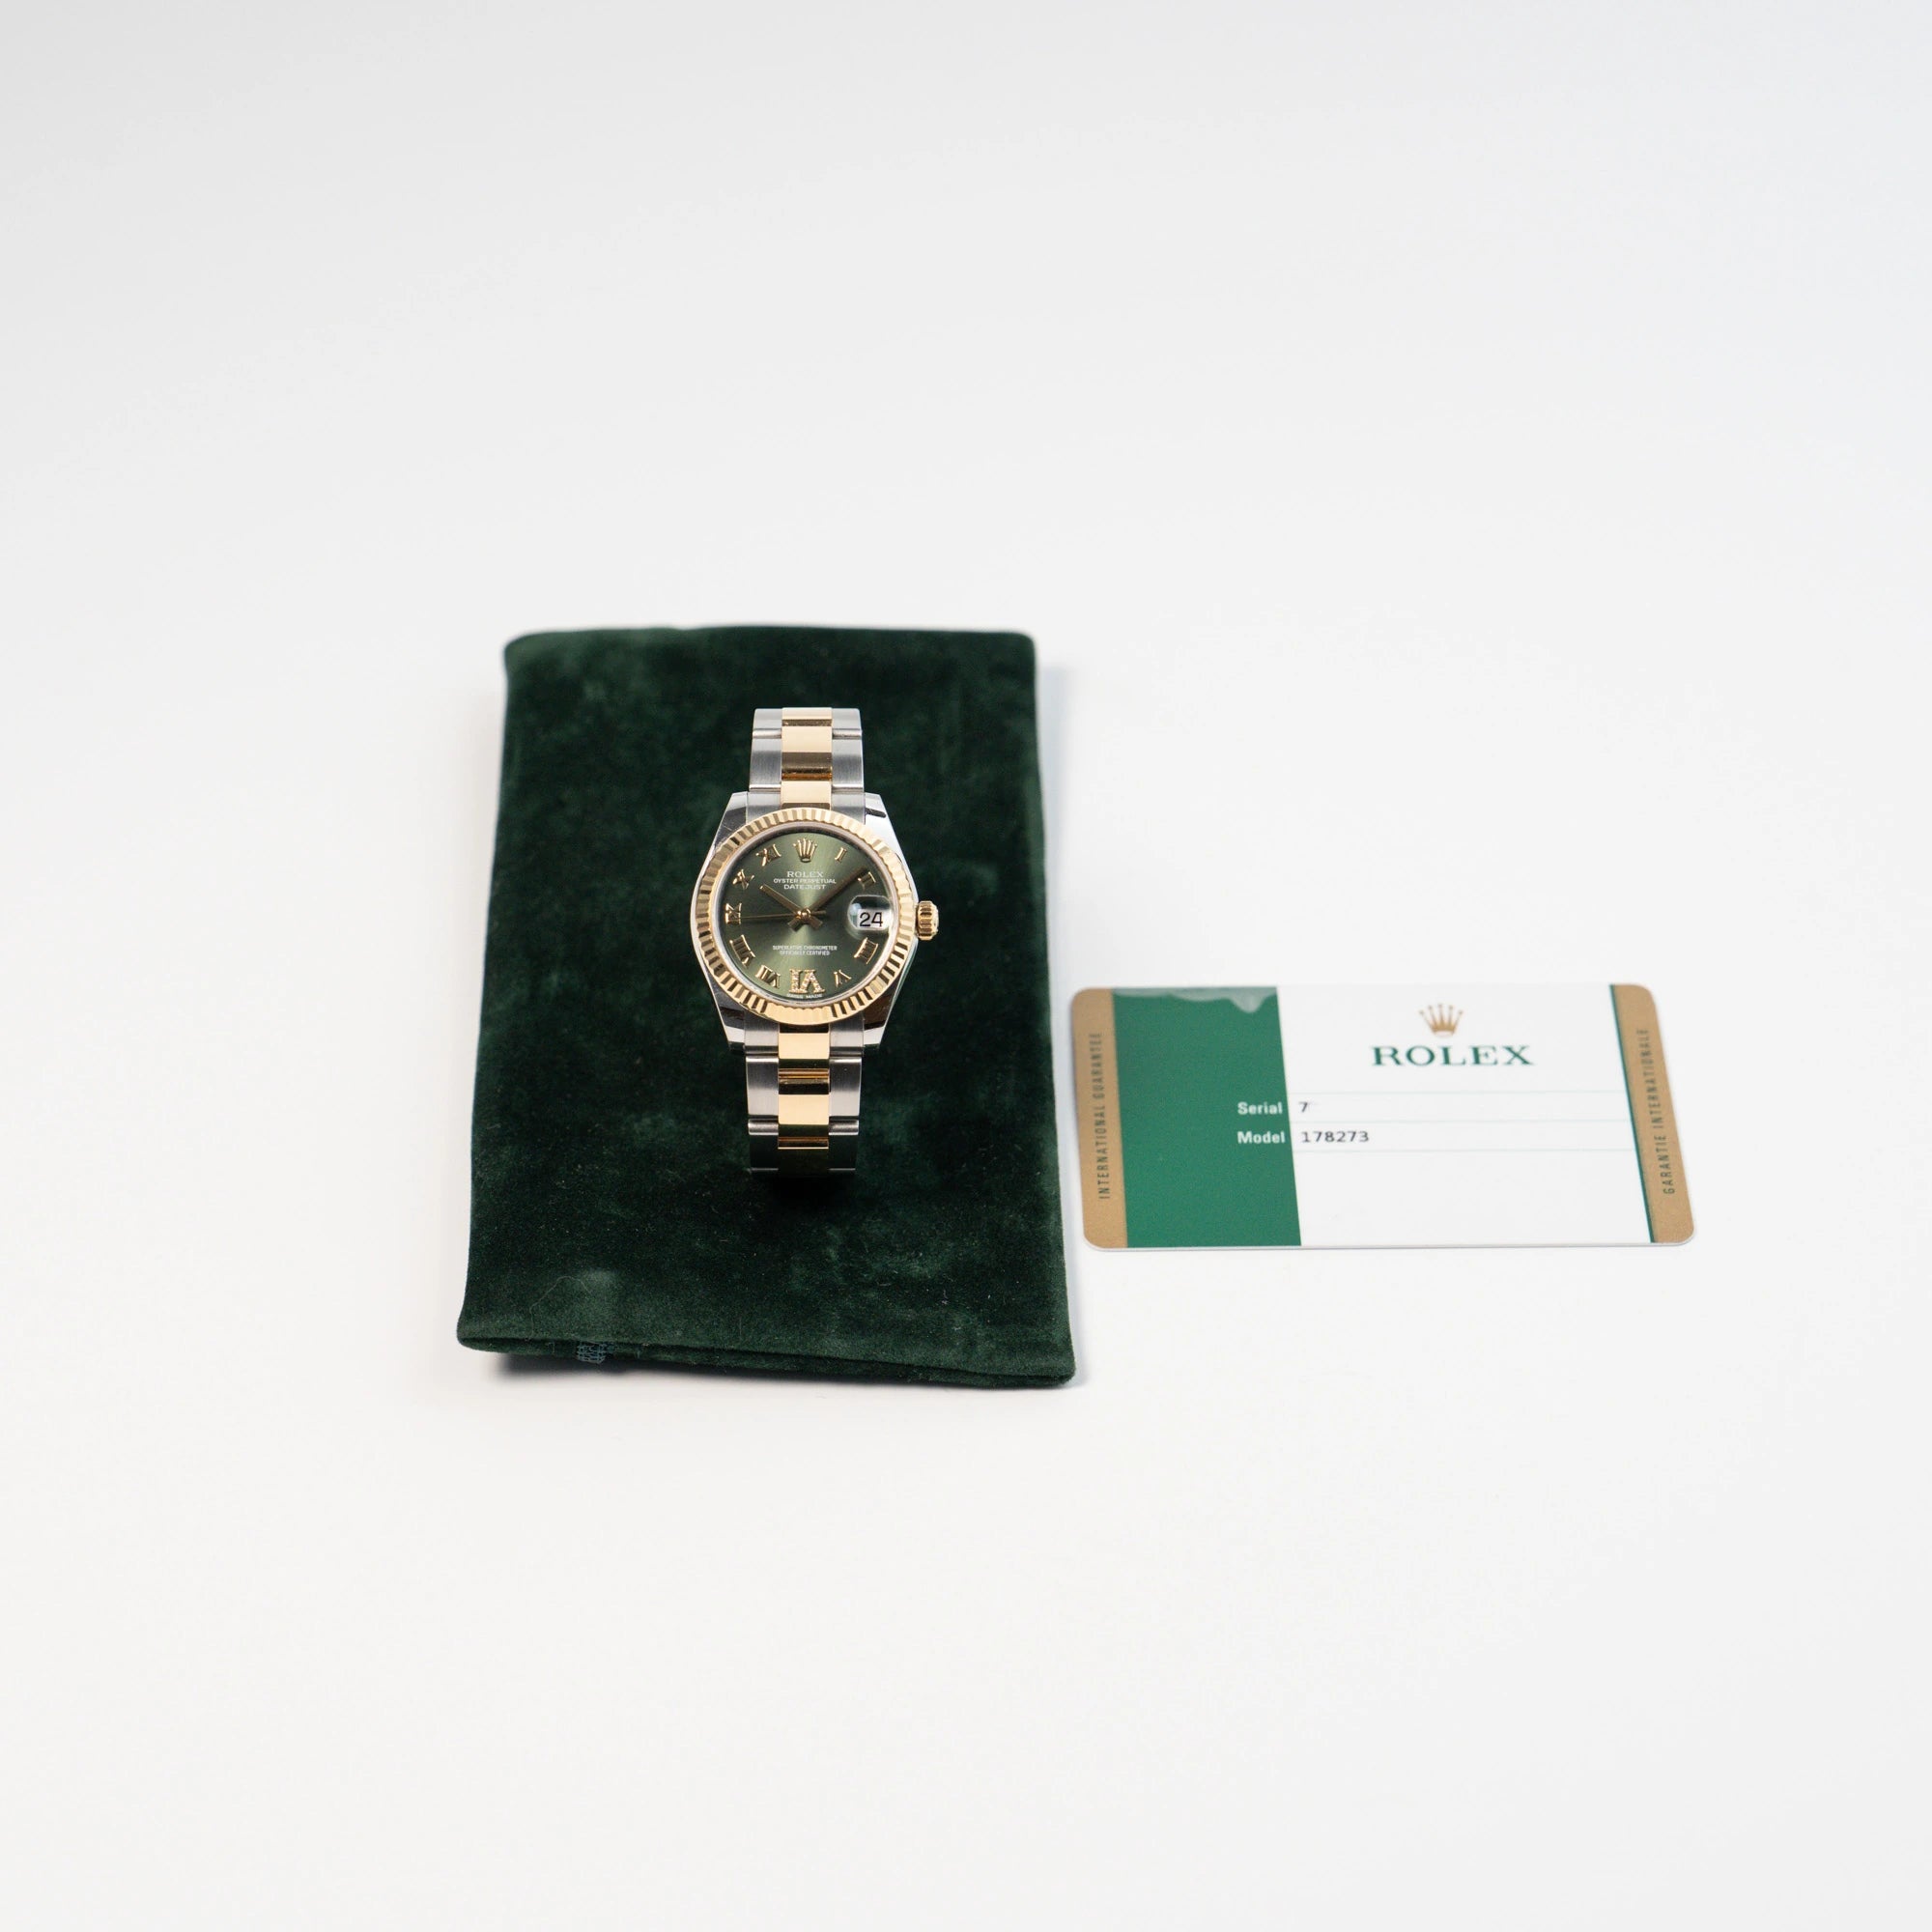 Rolex Datejust 31 mm für Ladies mit einem oliven Zifferblatt und einem diamantbesetzten Index zusammen mit dem Lieferumfang, betsehend aus einer Travel-Pouch und der originalen Rolex-Karte